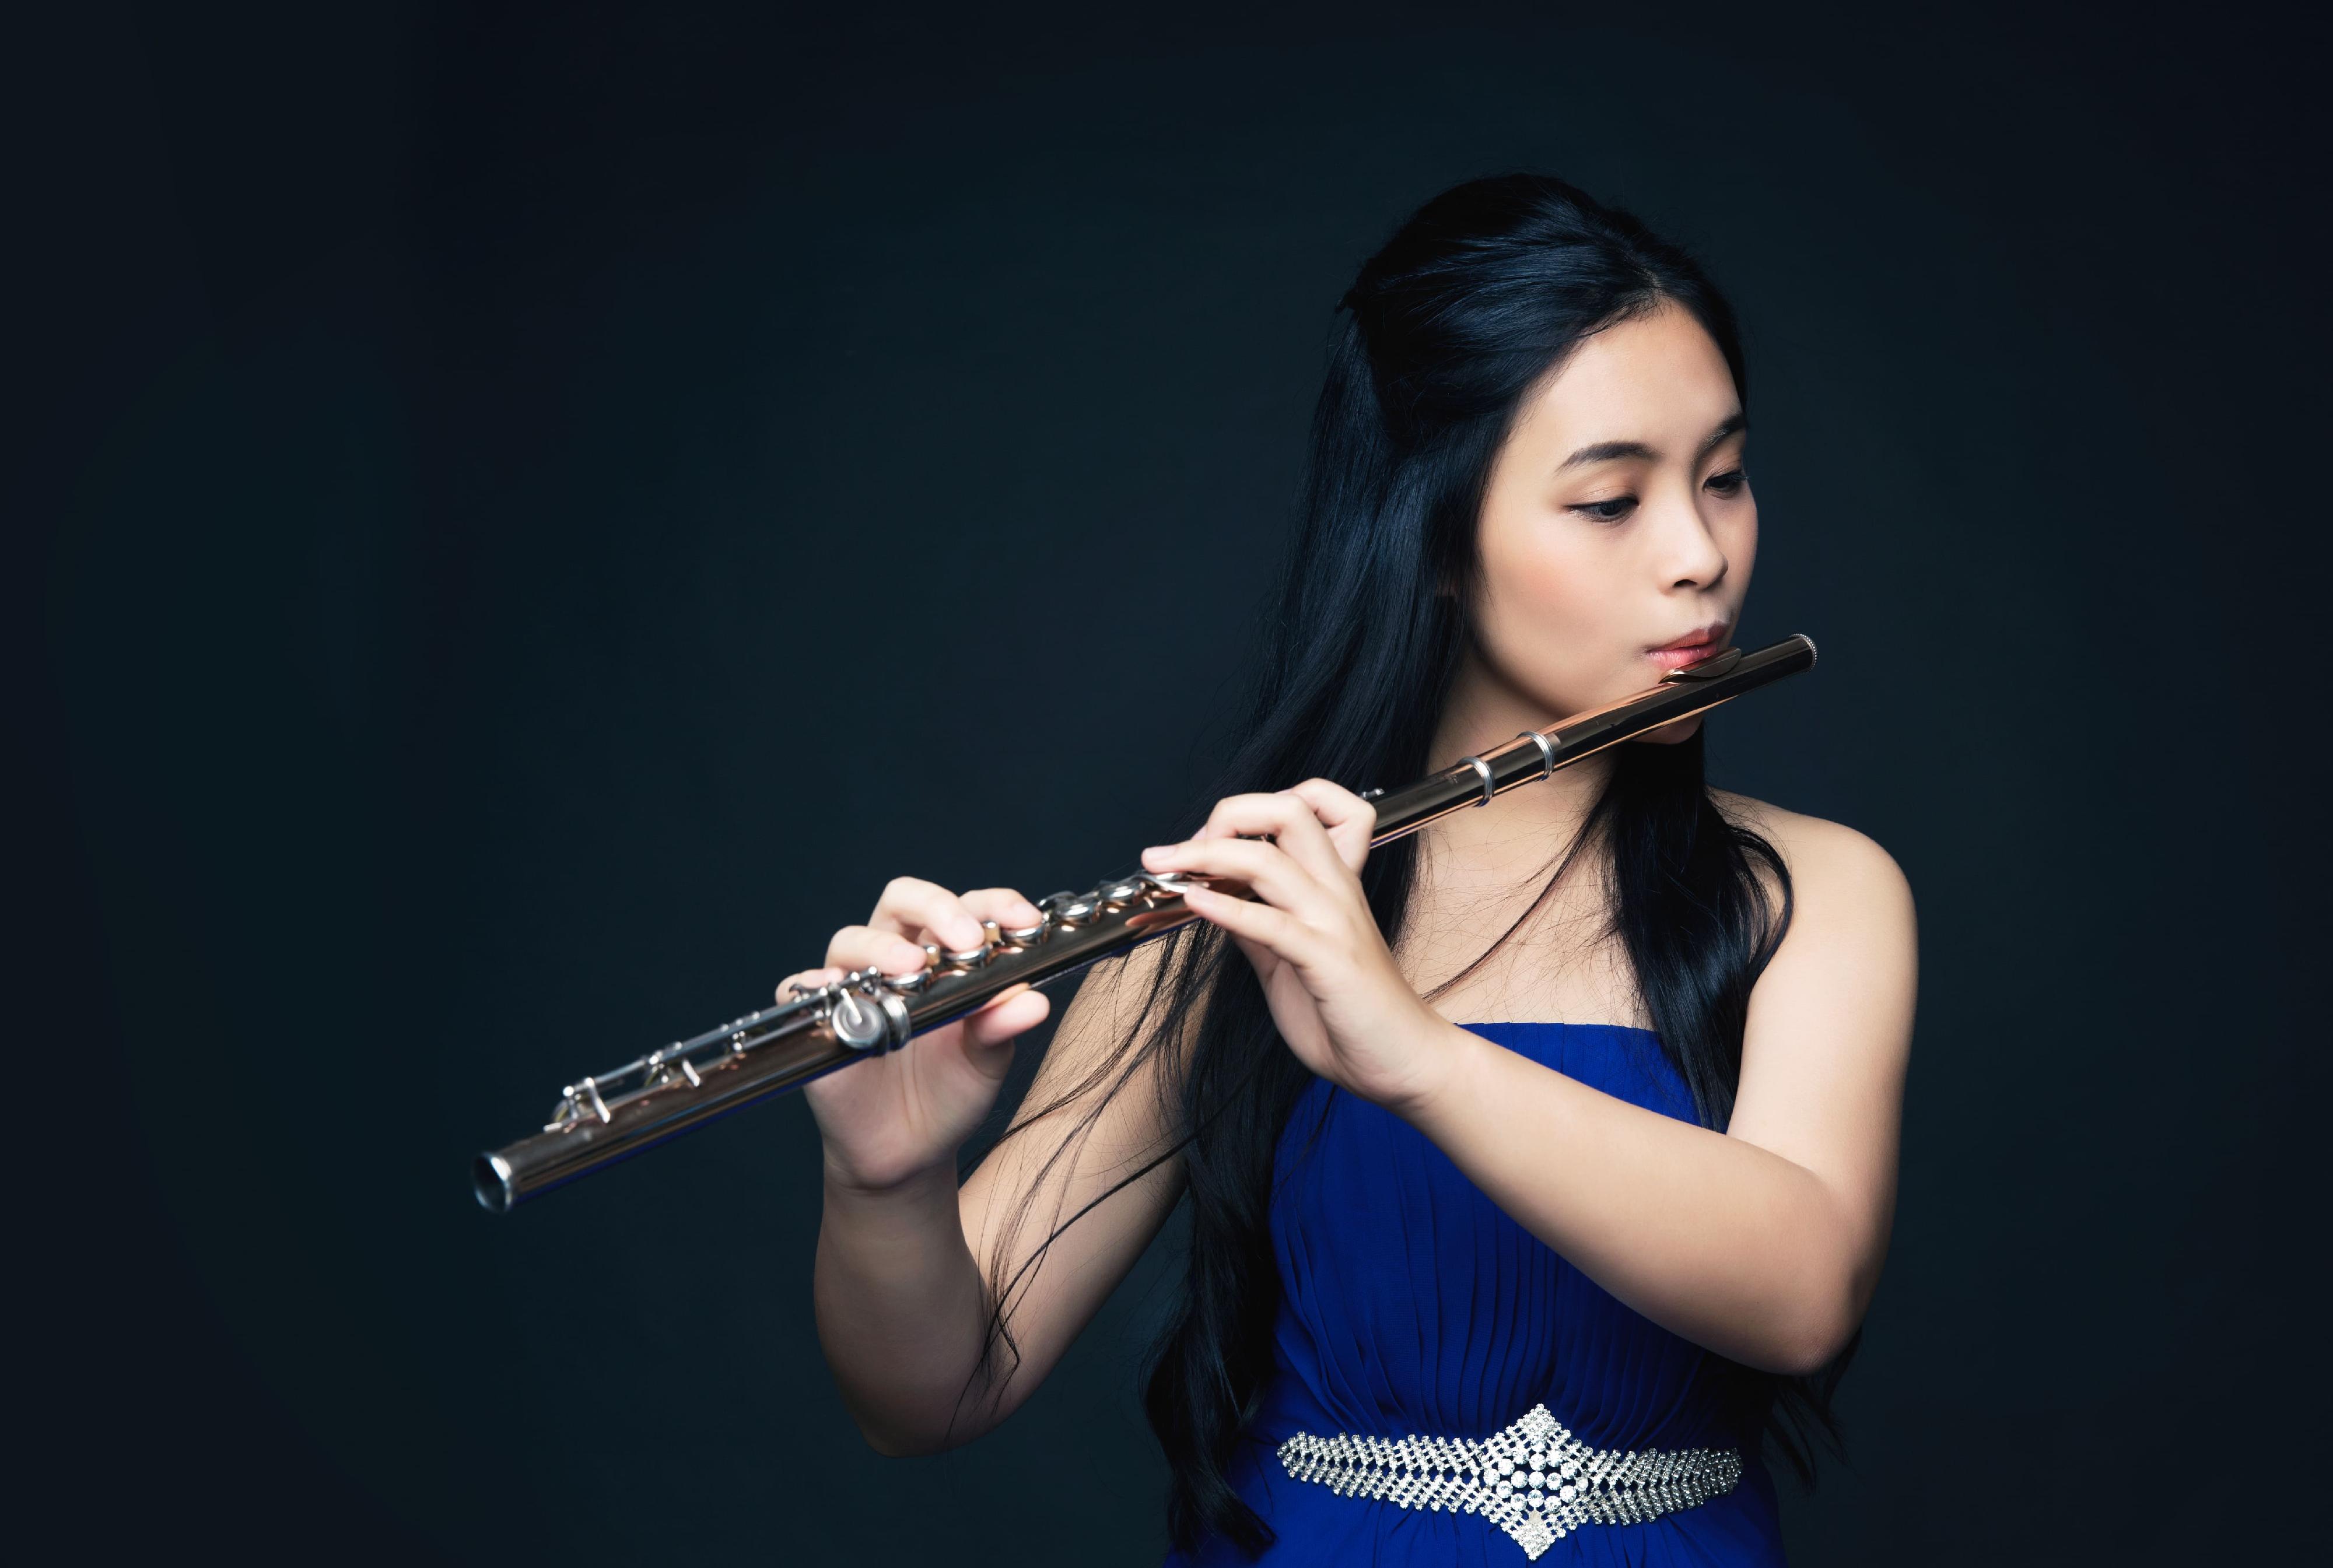 康樂及文化事務署「香港藝術家」系列五月舉辦許嘉晴與廖冬保長笛及巴松管演奏會。圖示長笛演奏家許嘉晴。